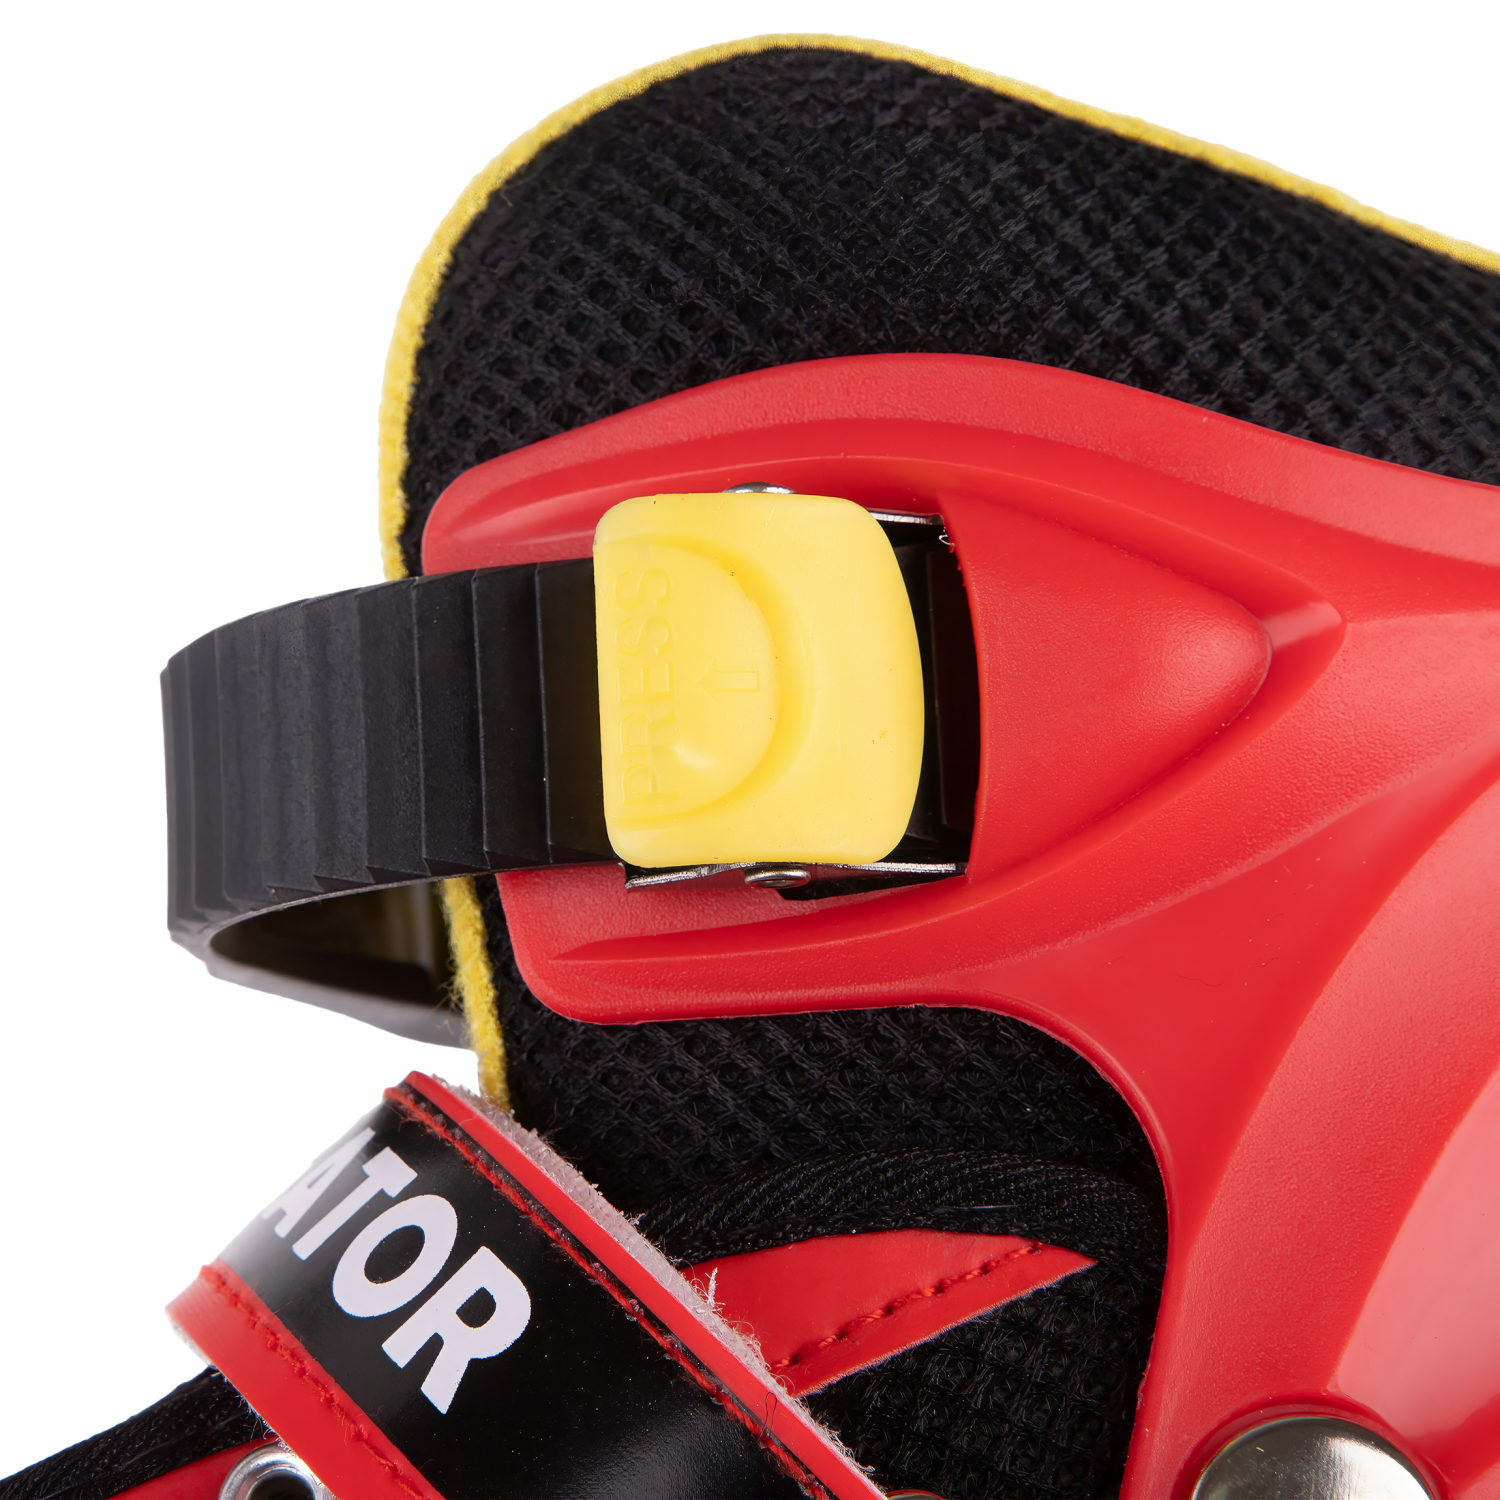 Ролики Navigator детские раздвижные 30 - 33 размер с защитой и шлемом красный - фото 18